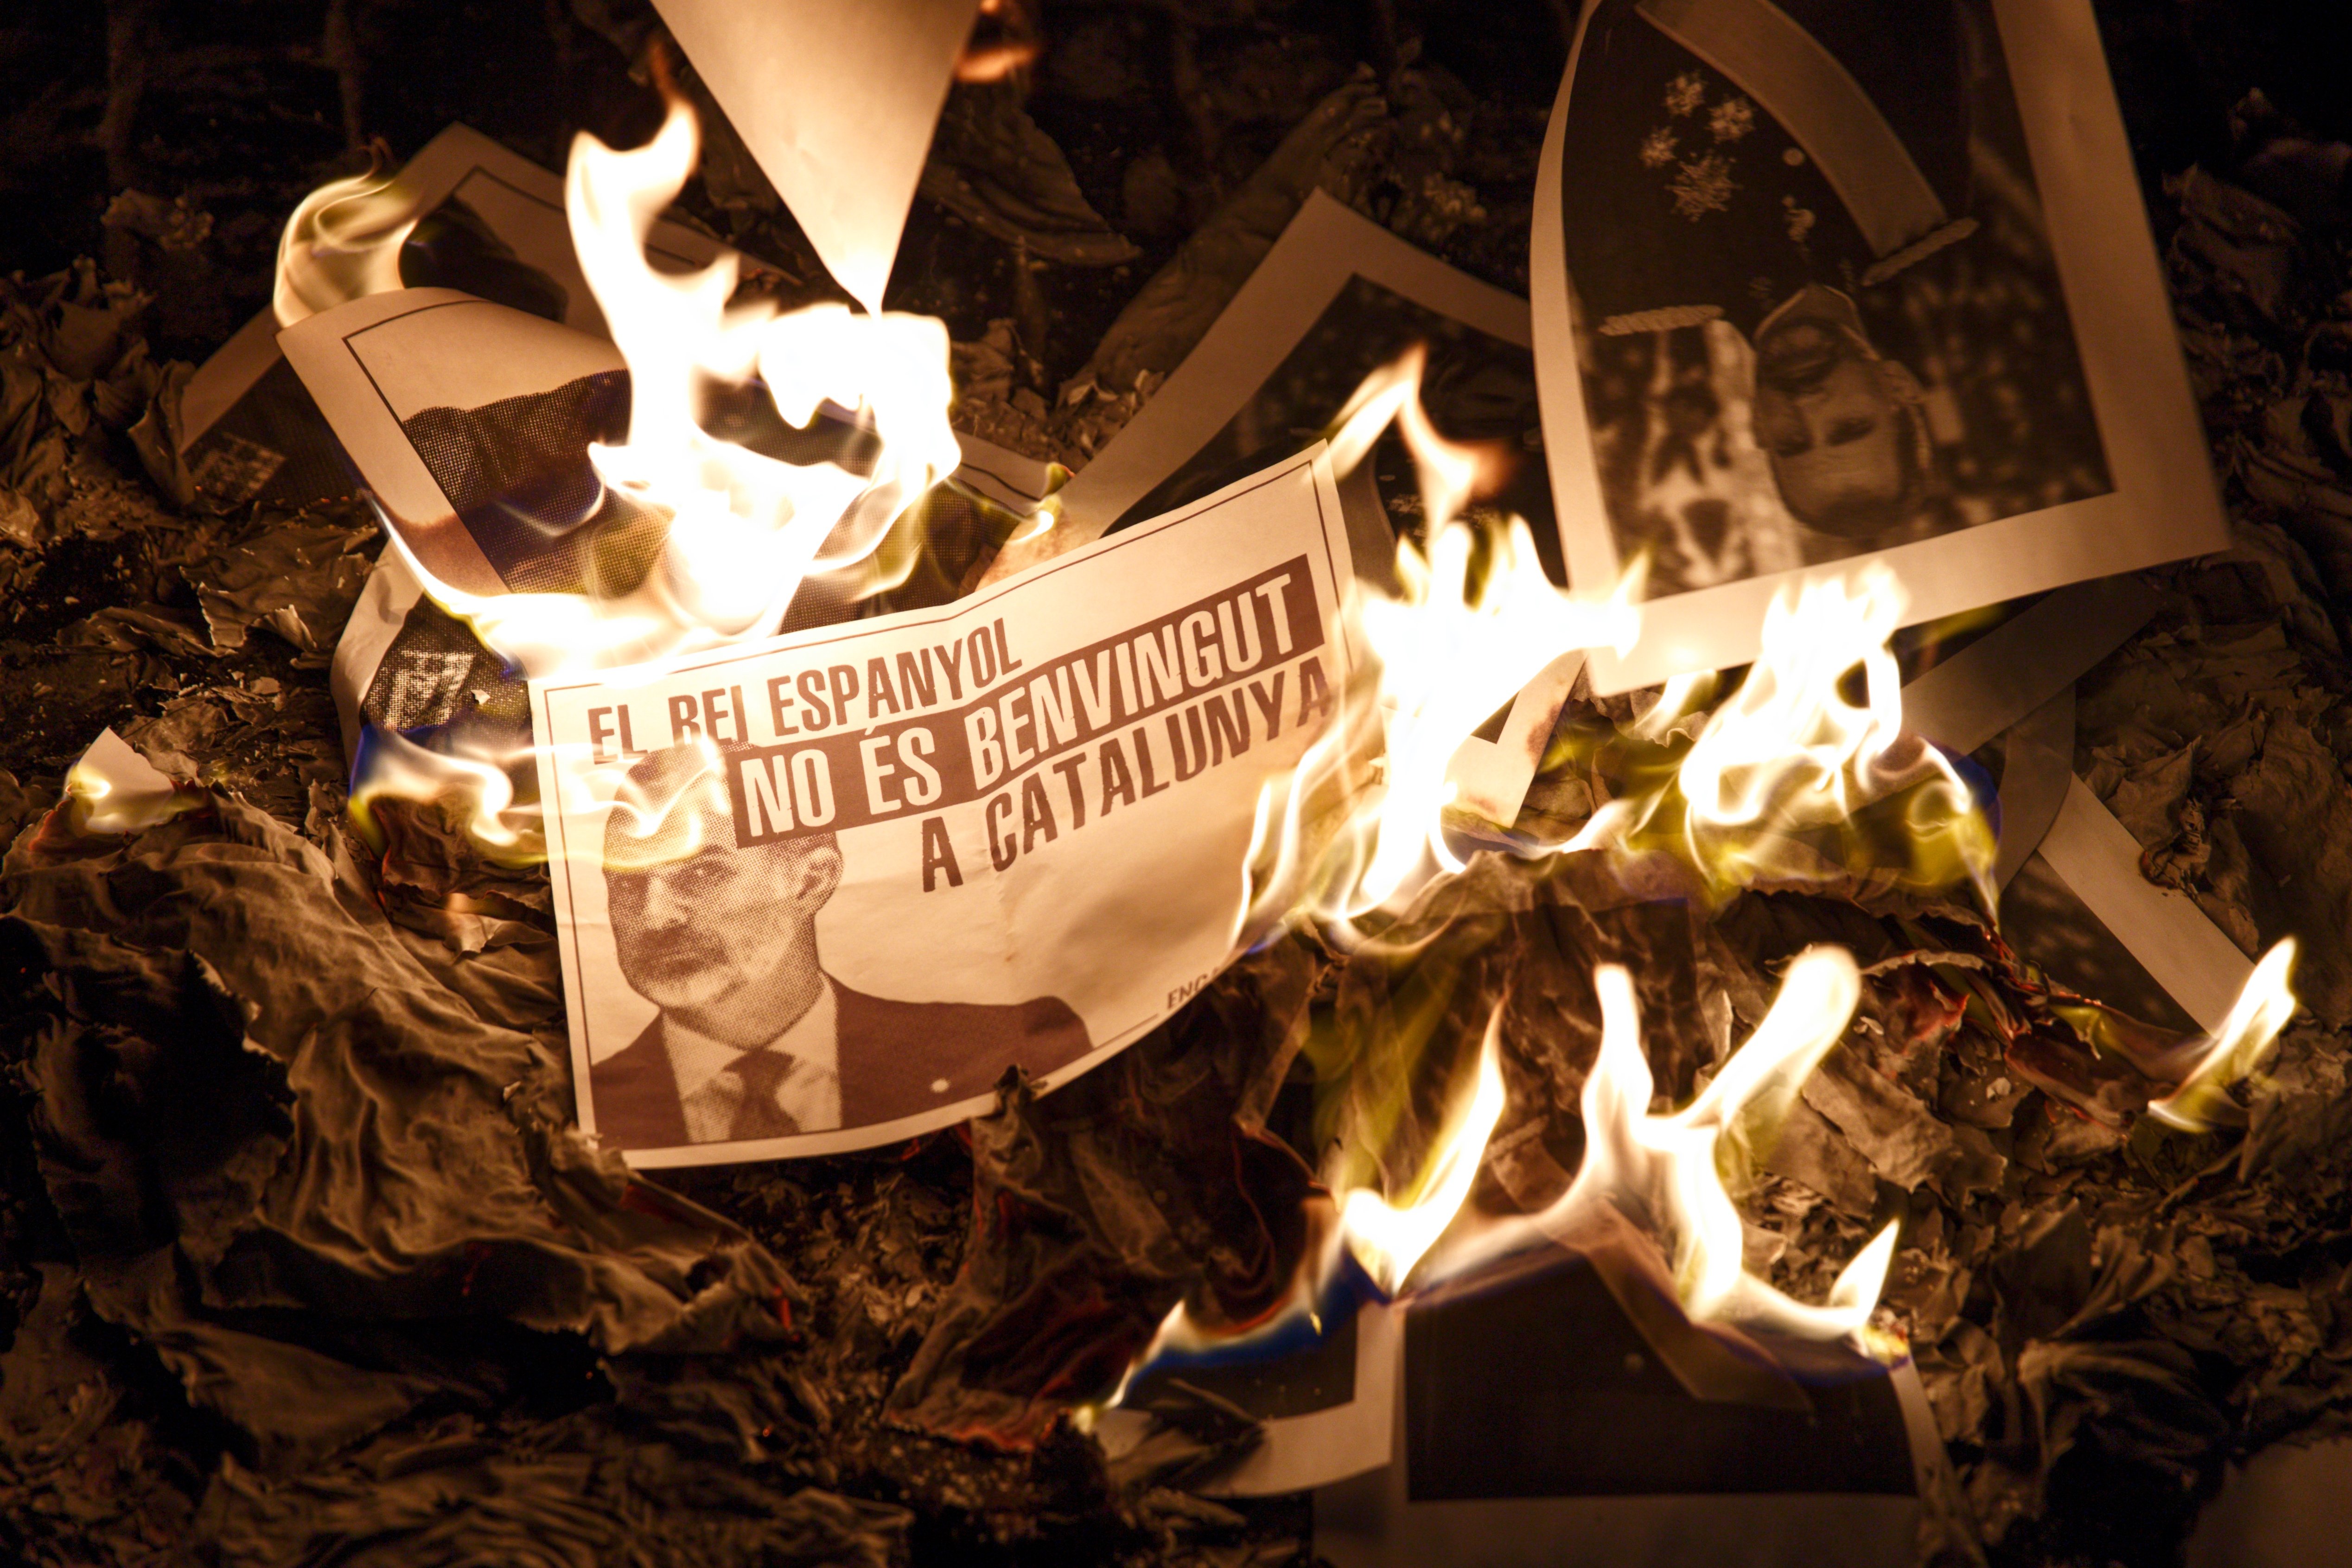 Crema massiva de fotos de Felip VI arreu de Catalunya